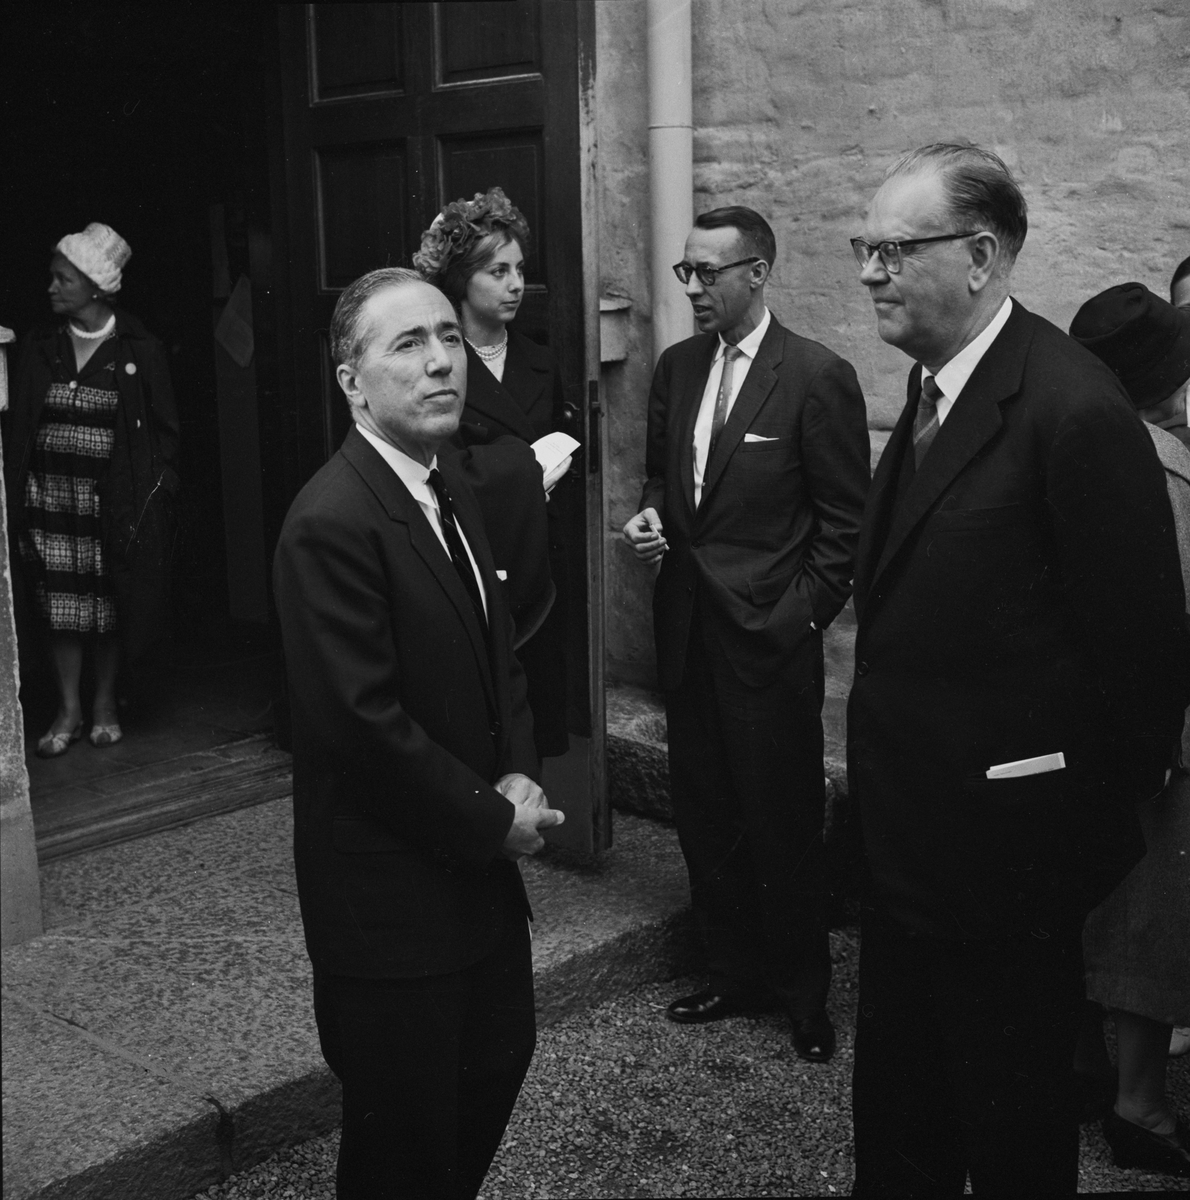 Amerikansk-nordisk konferens öppnad av Erlander, Sigtuna 1958